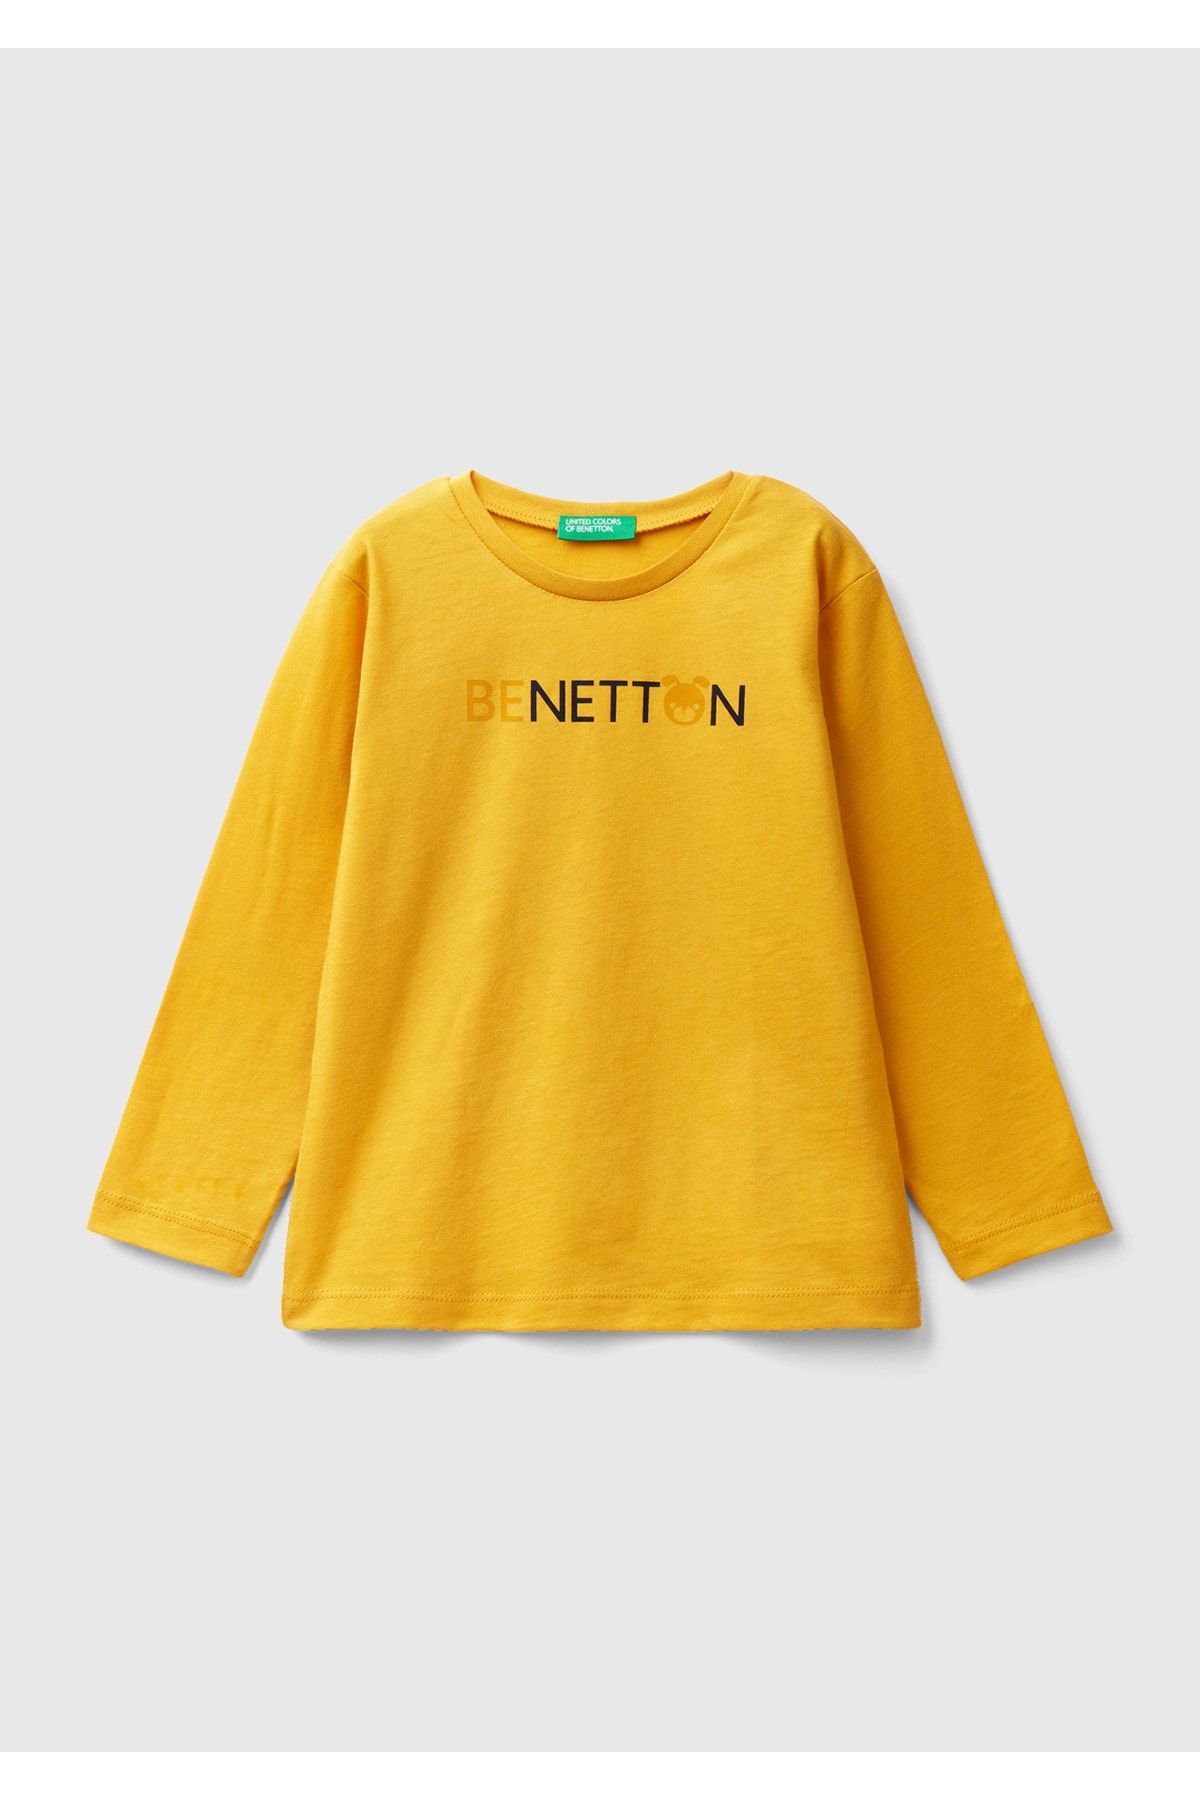 United Colors of Benetton Erkek Çocuk Hardal Slogan Baskılı T-Shirt Hardal Sarı